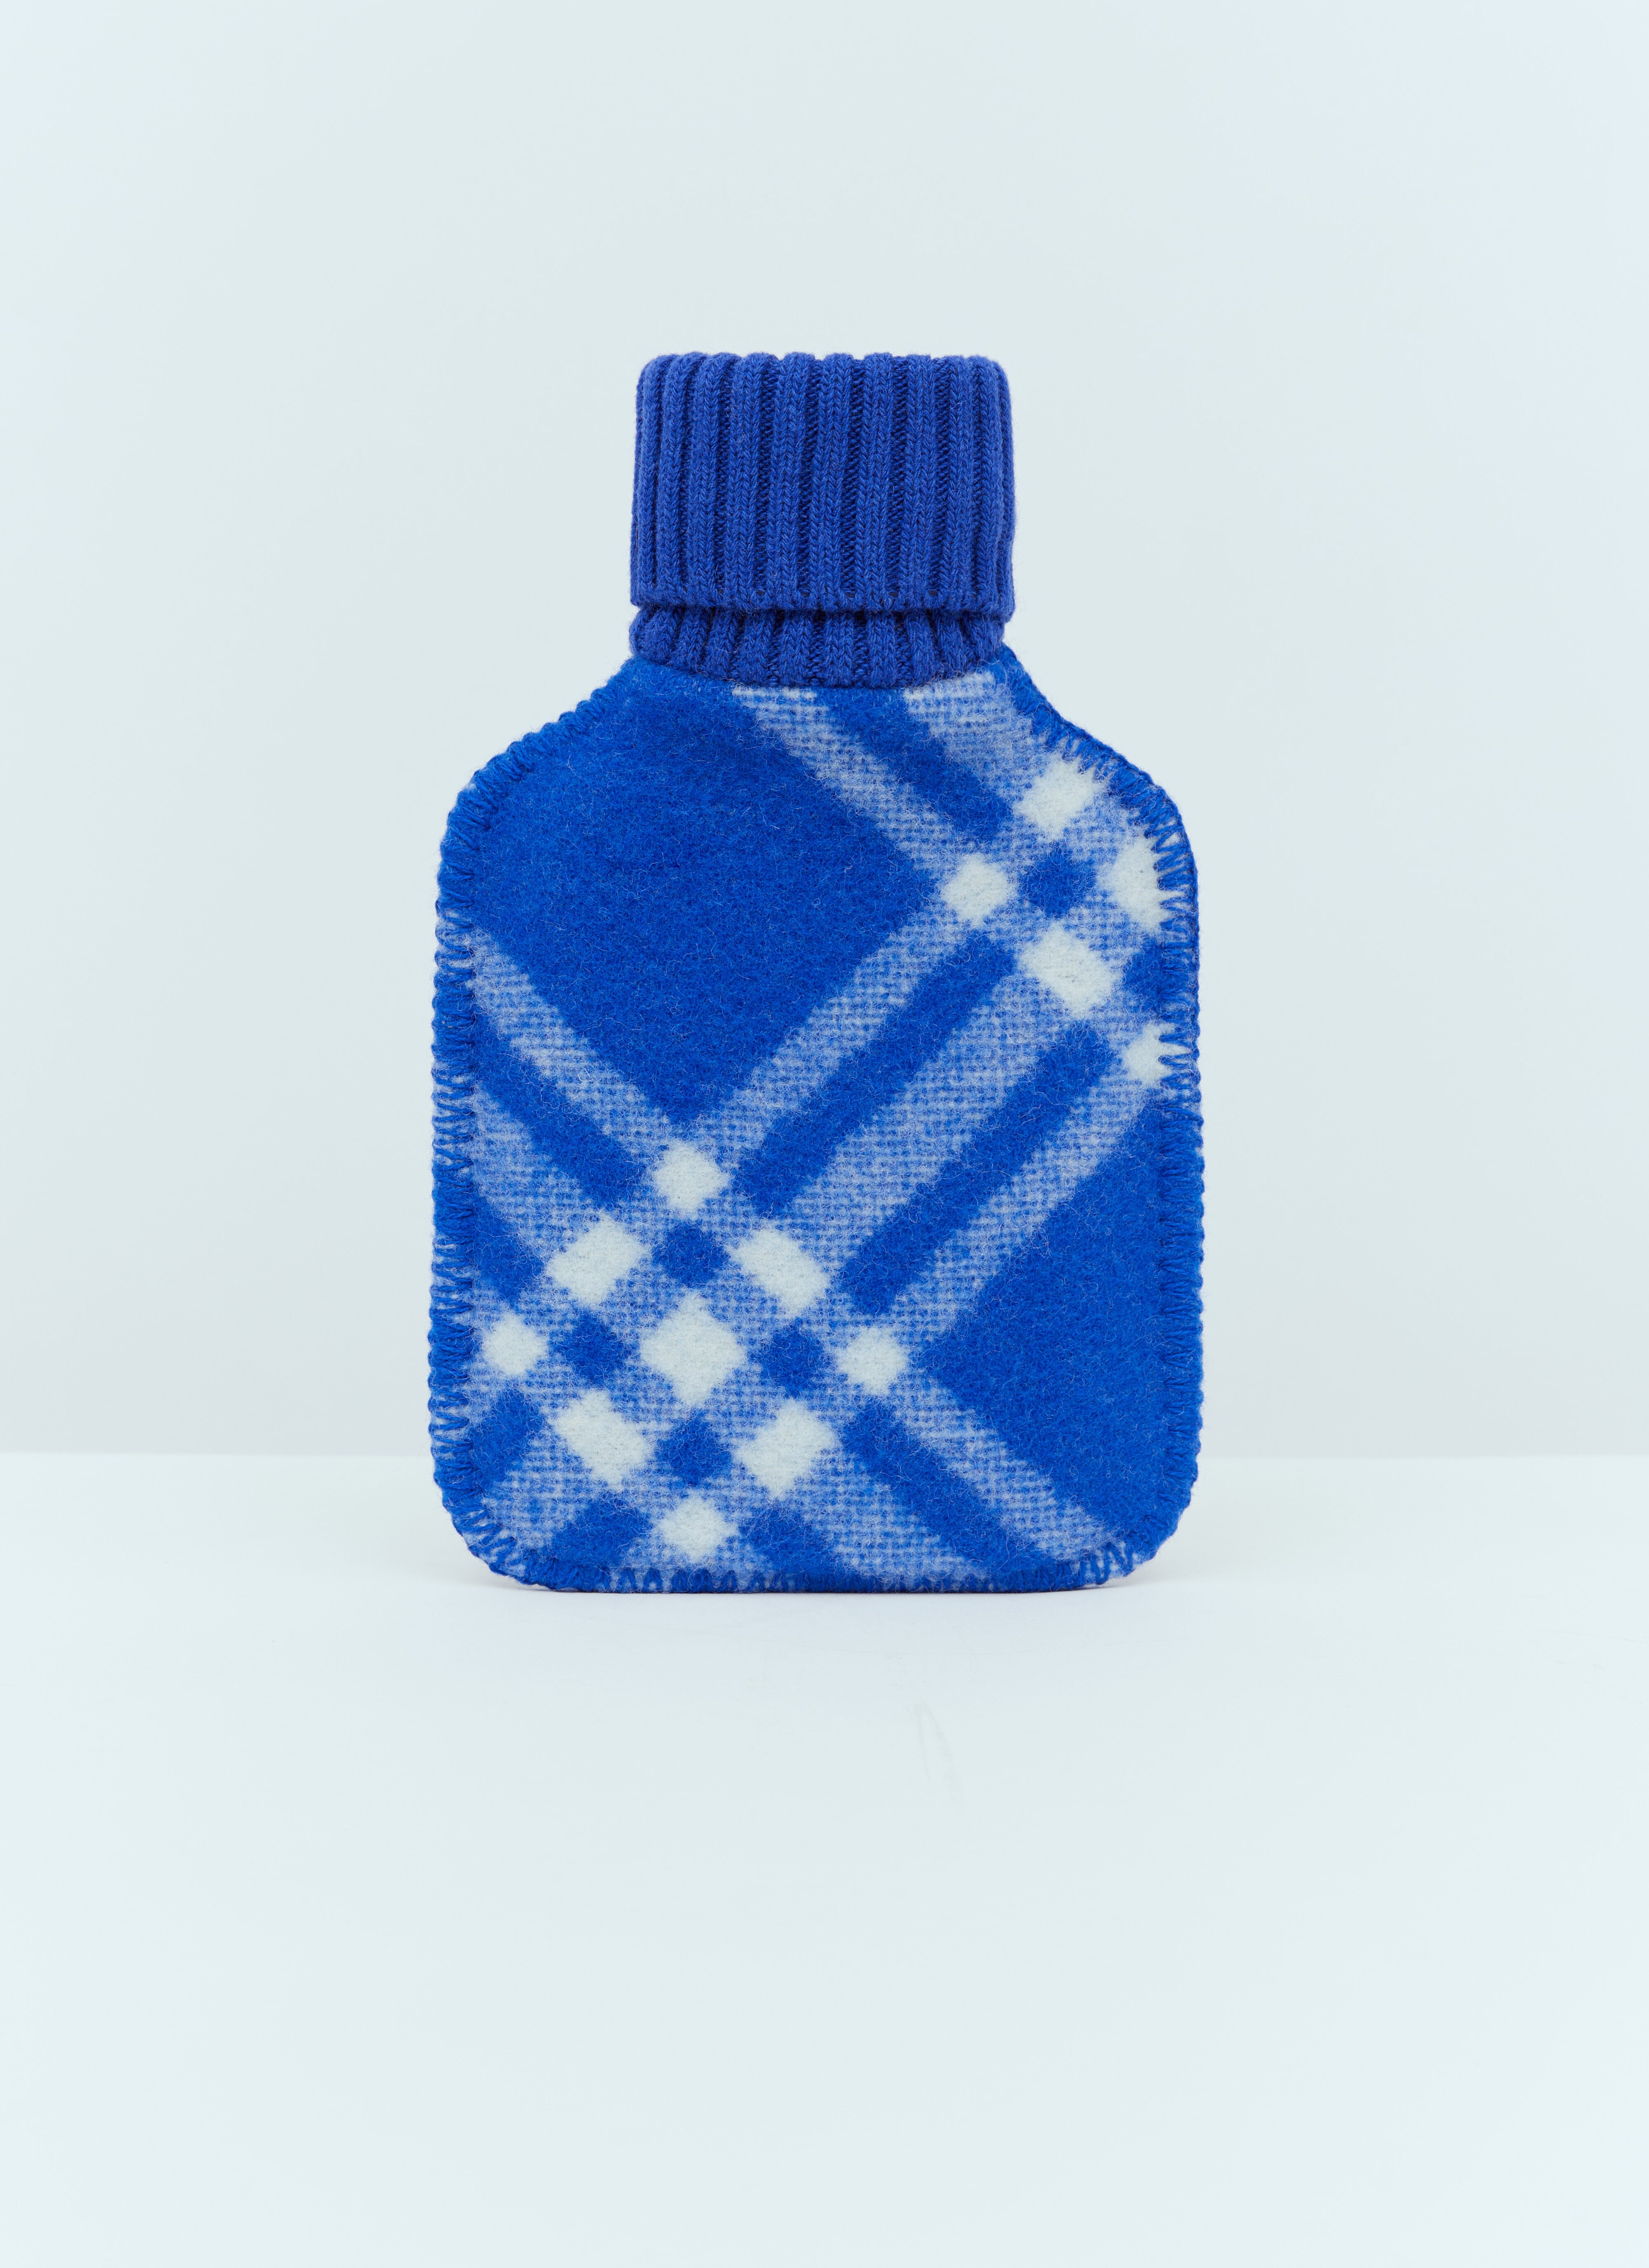 Carne Bollente Wool Check Hot Water Bottle Blue cbn0356016